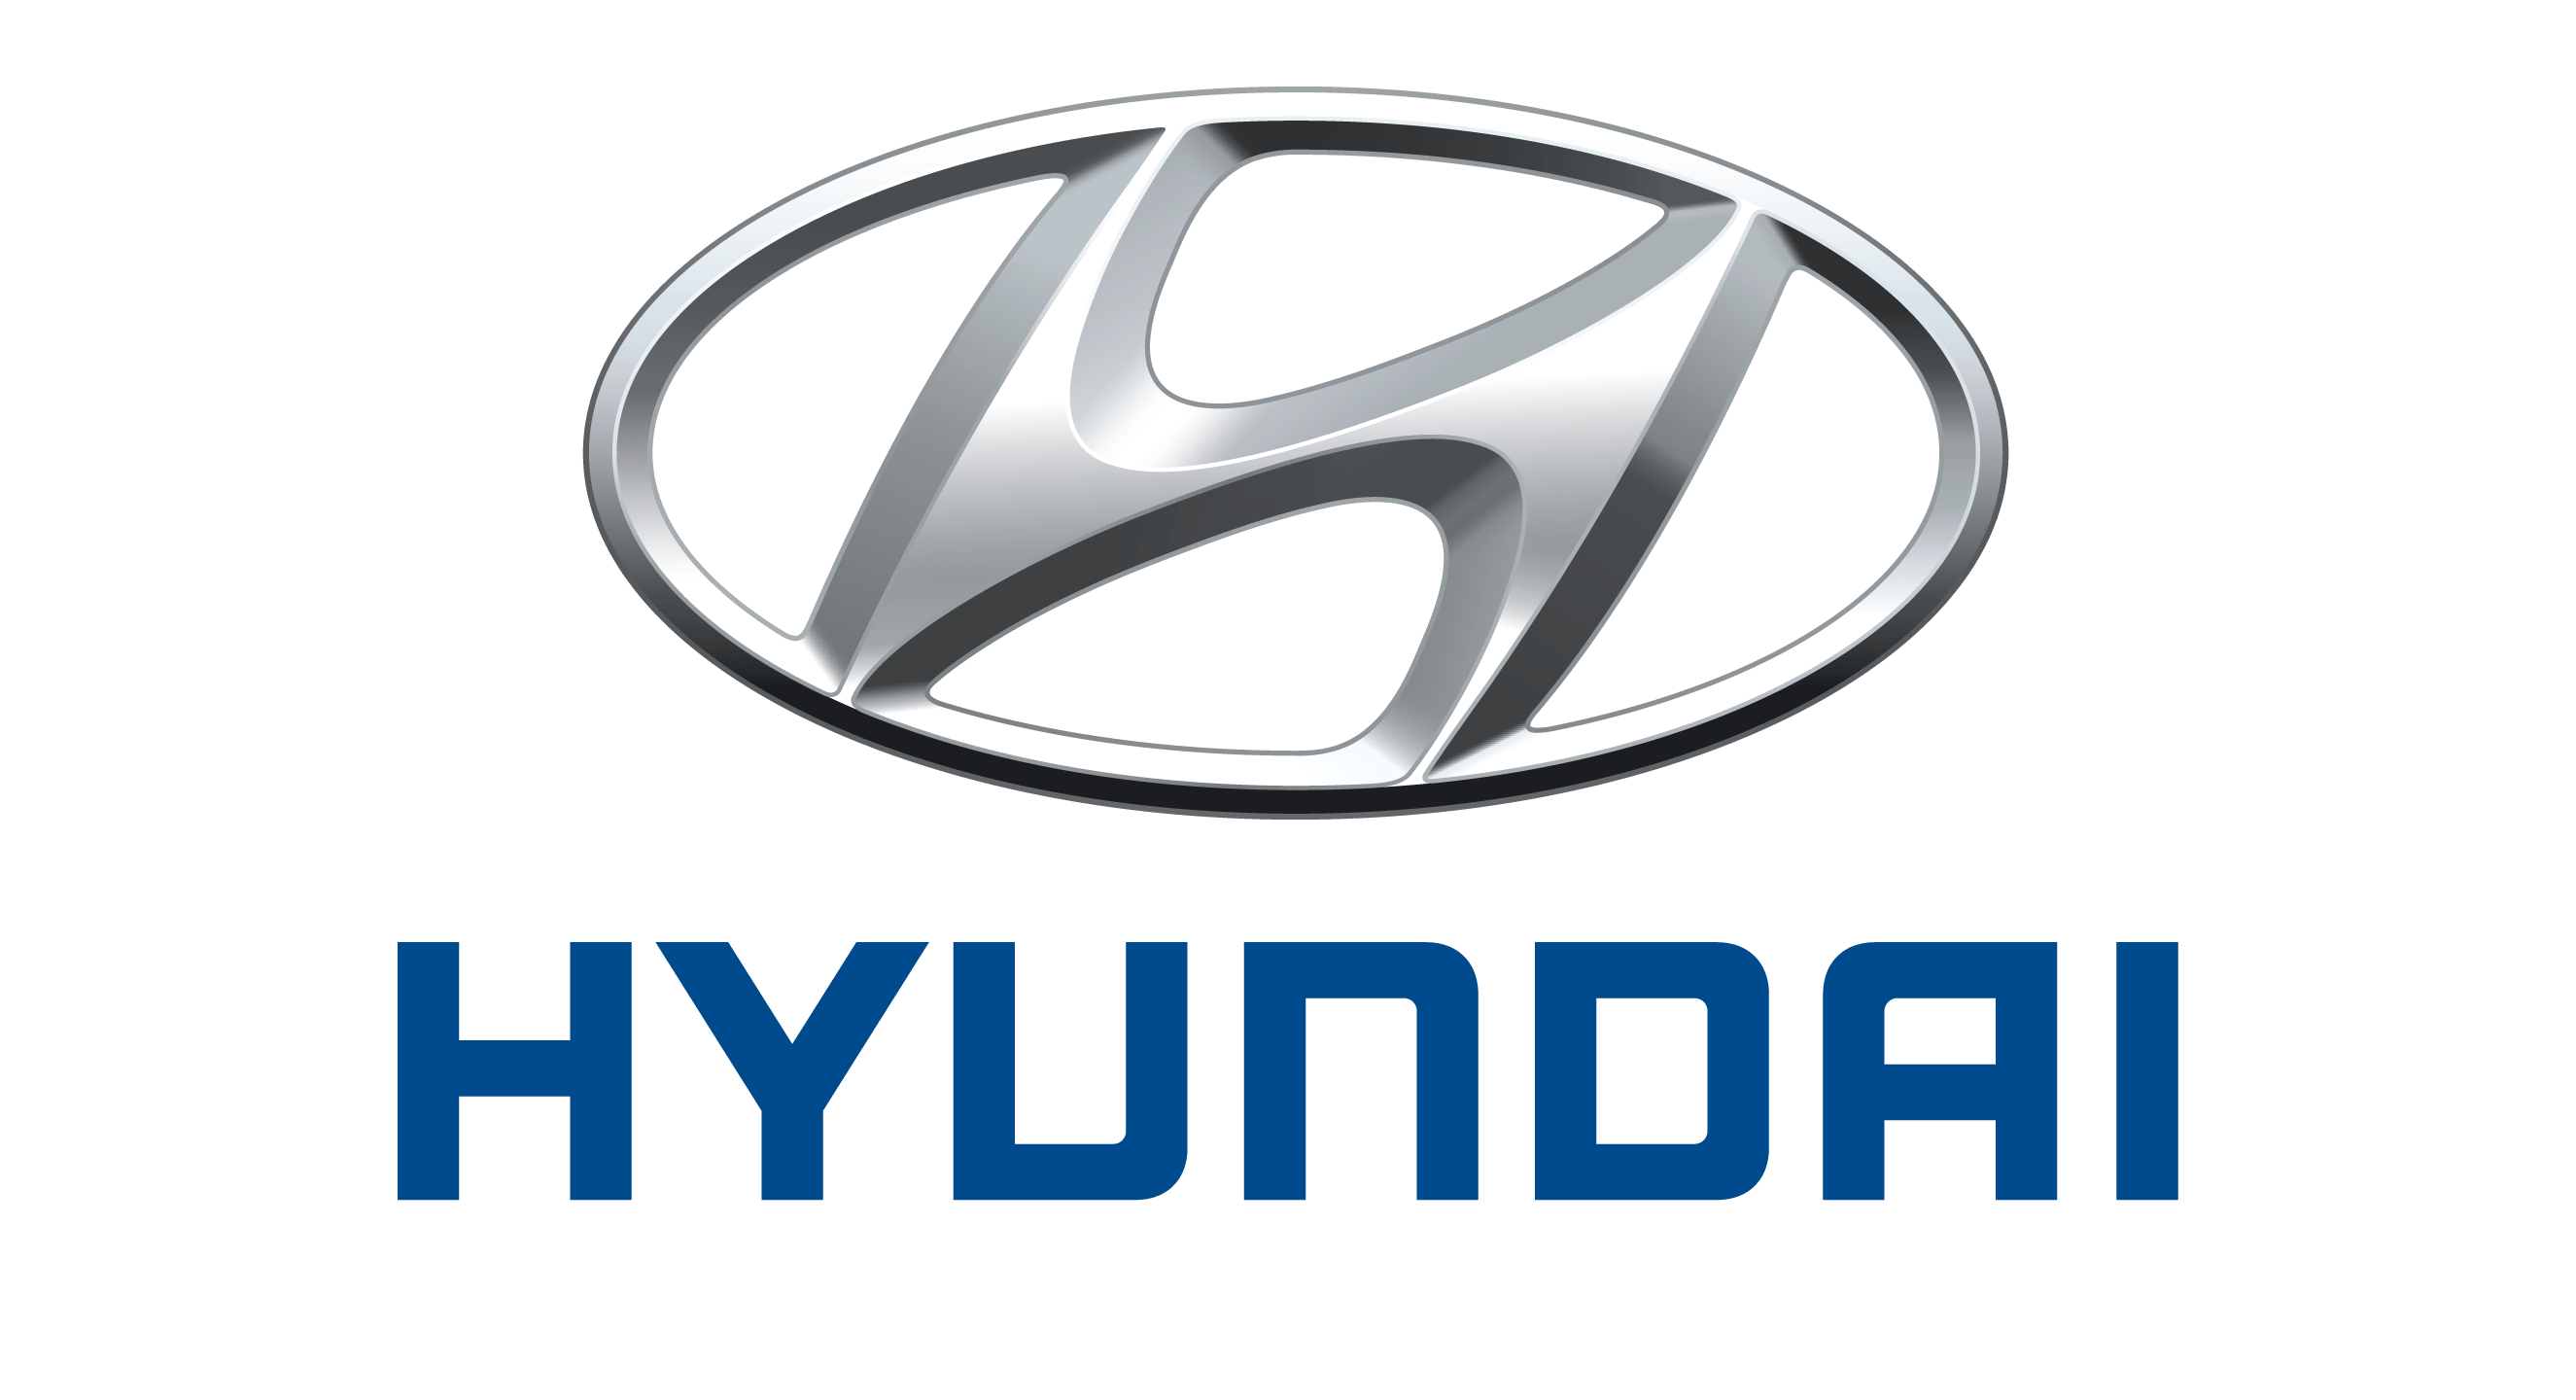 logo xe hyundai moi nhat - Mazda 2 [hienthinam]: thông số, giá xe & khuyến mãi tháng [hienthithang]